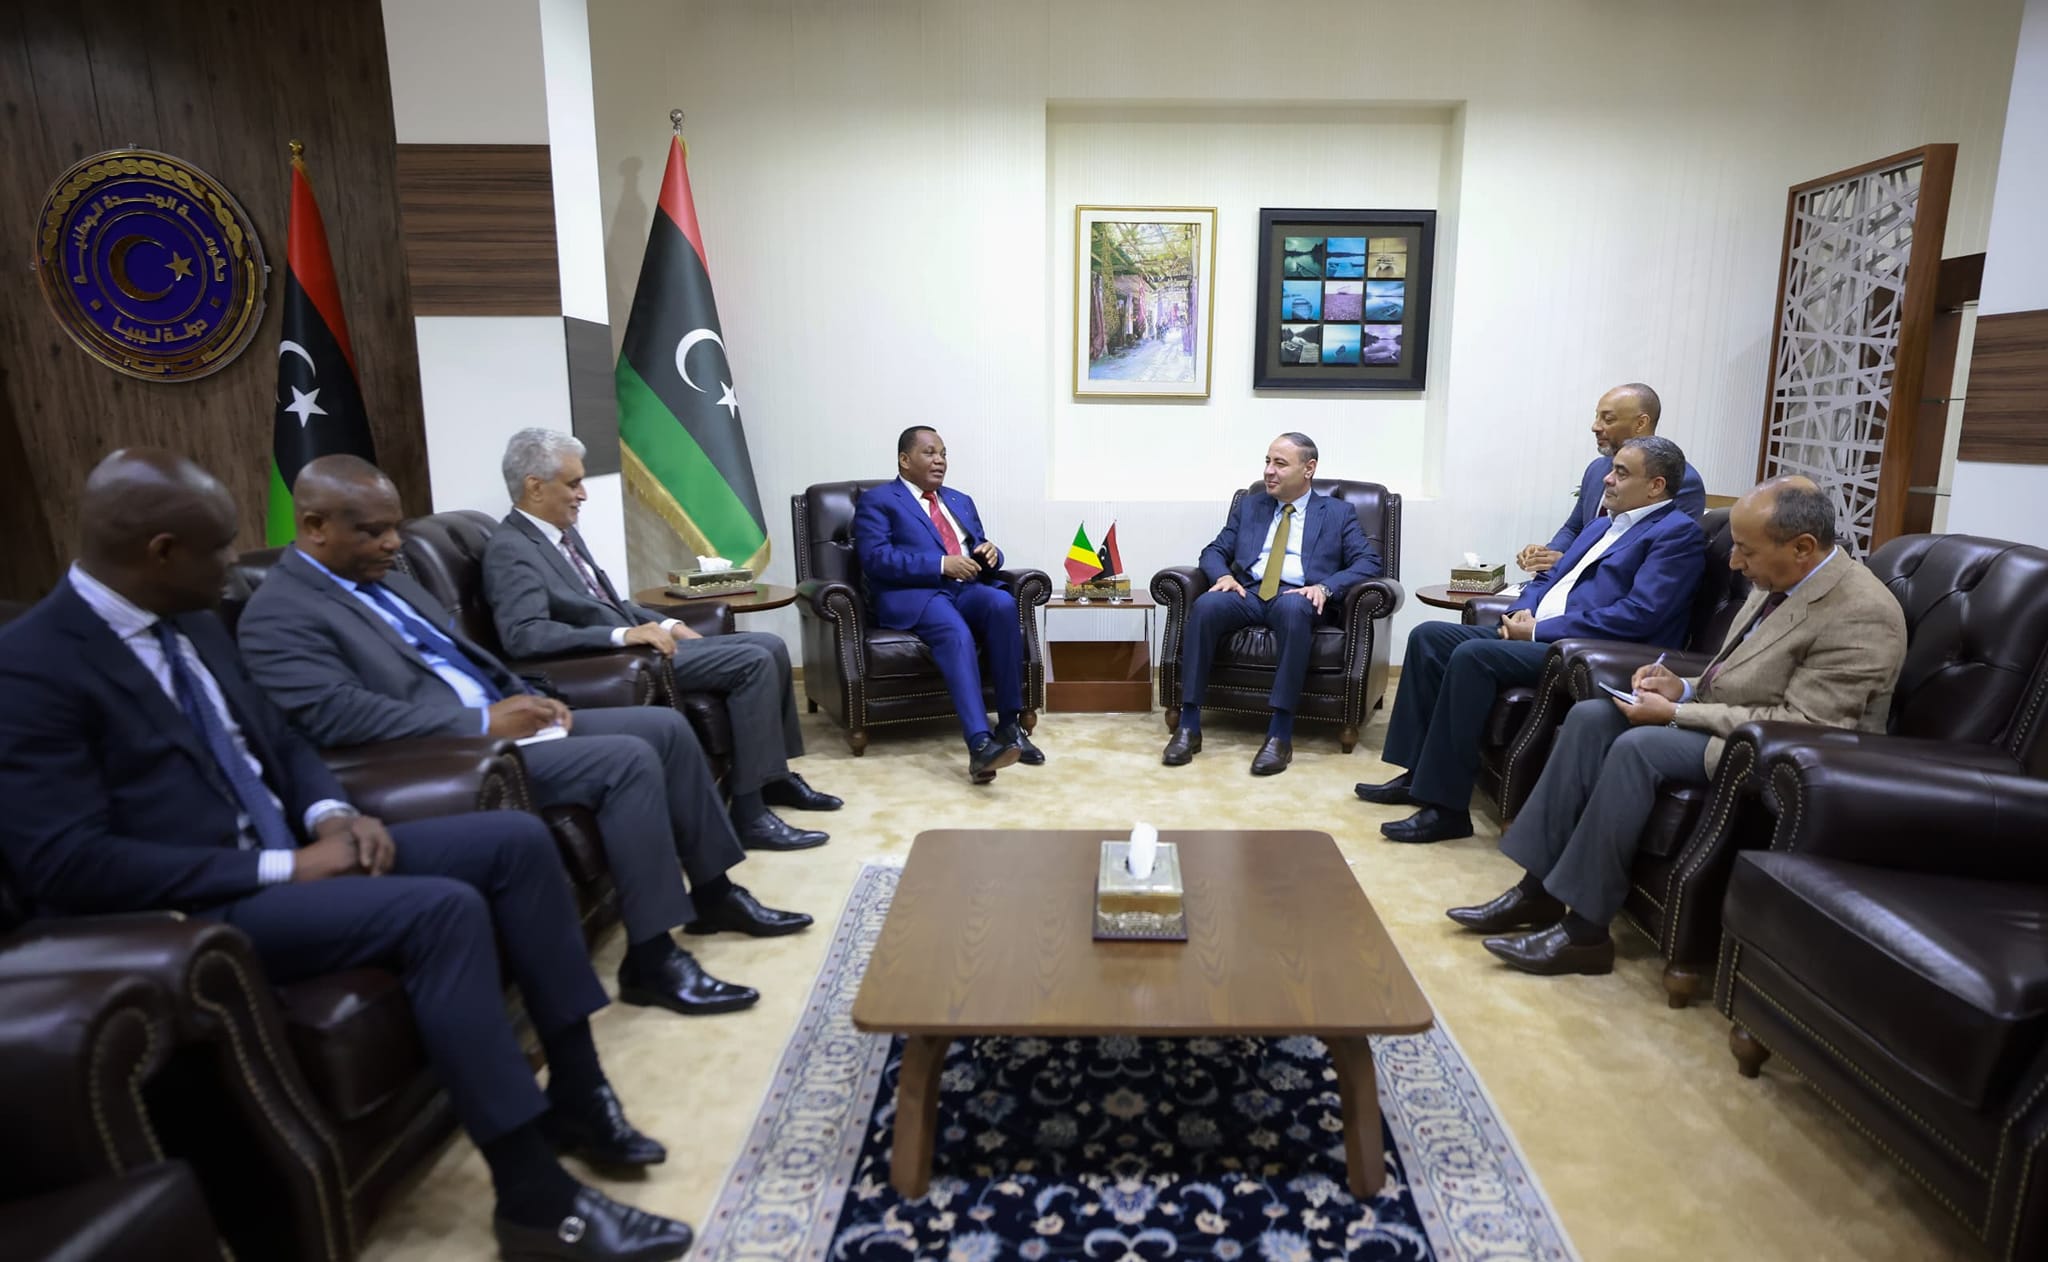  الباعور  يبحث مع وزير خارجية  الكونغو  العلاقات الثنائية بين البلدين وملف المصالحة الوطنية في  ليبيا. 